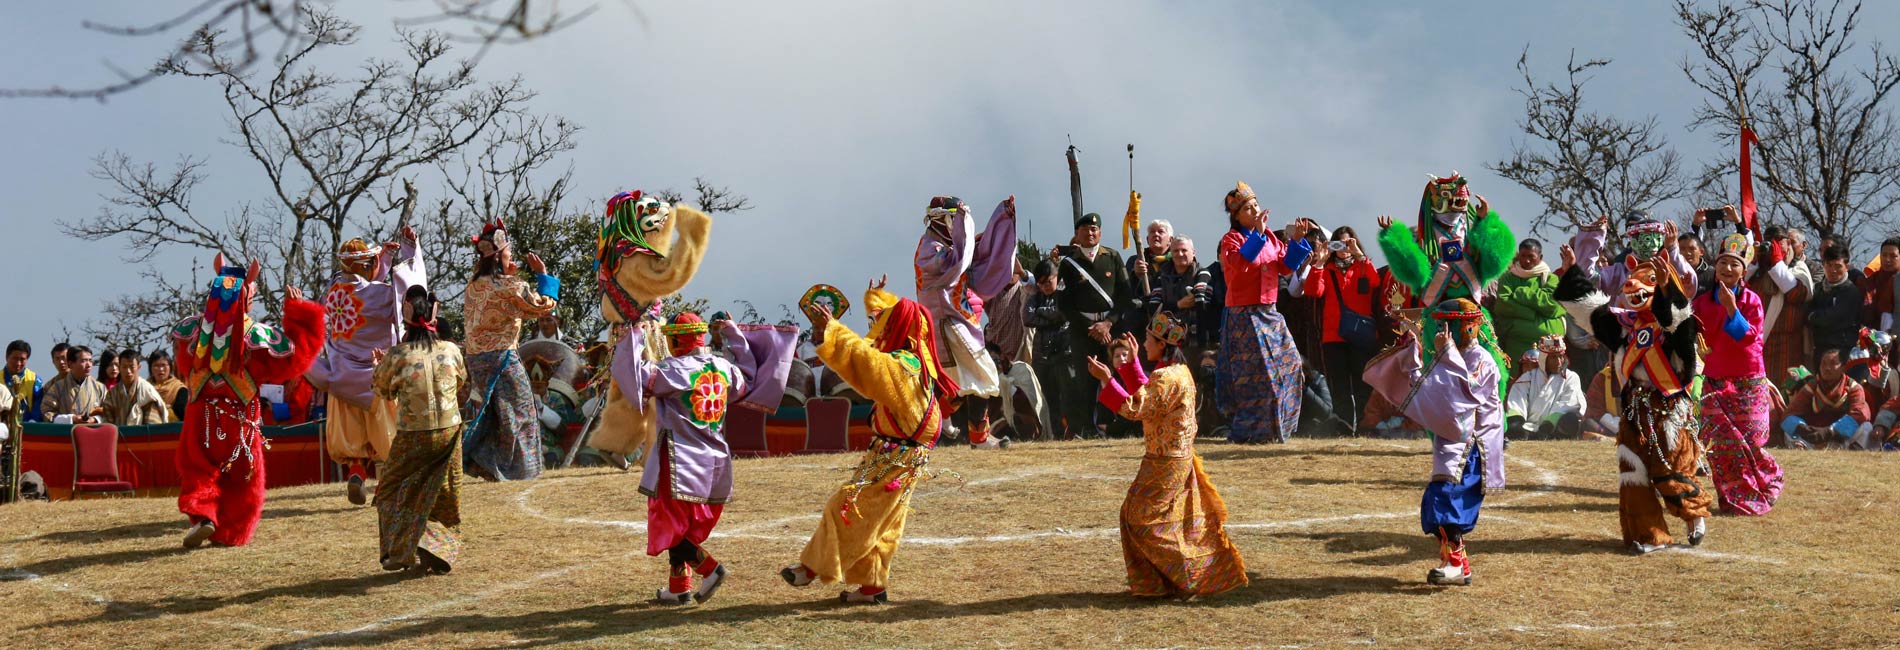 Festival Tours in Bhutan